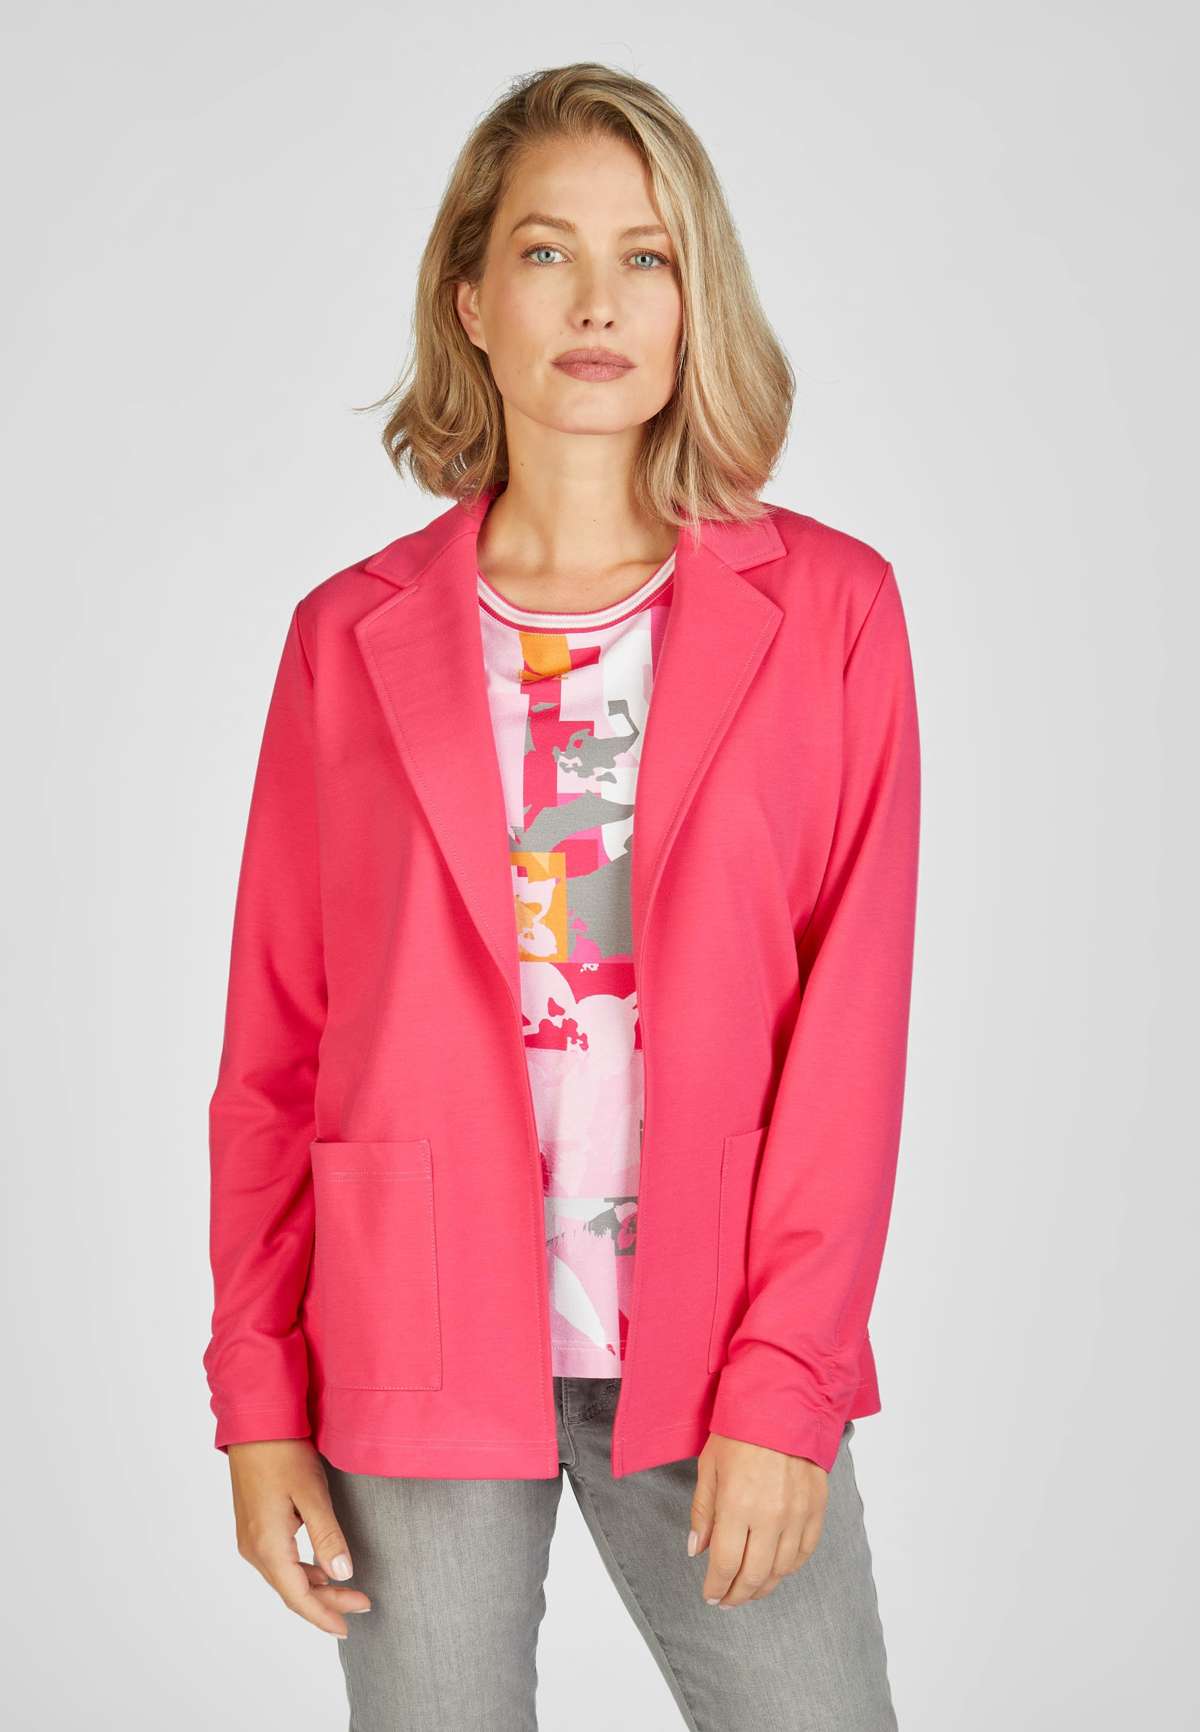 Пиджак-пиджак с рюшами на боковых рукавах